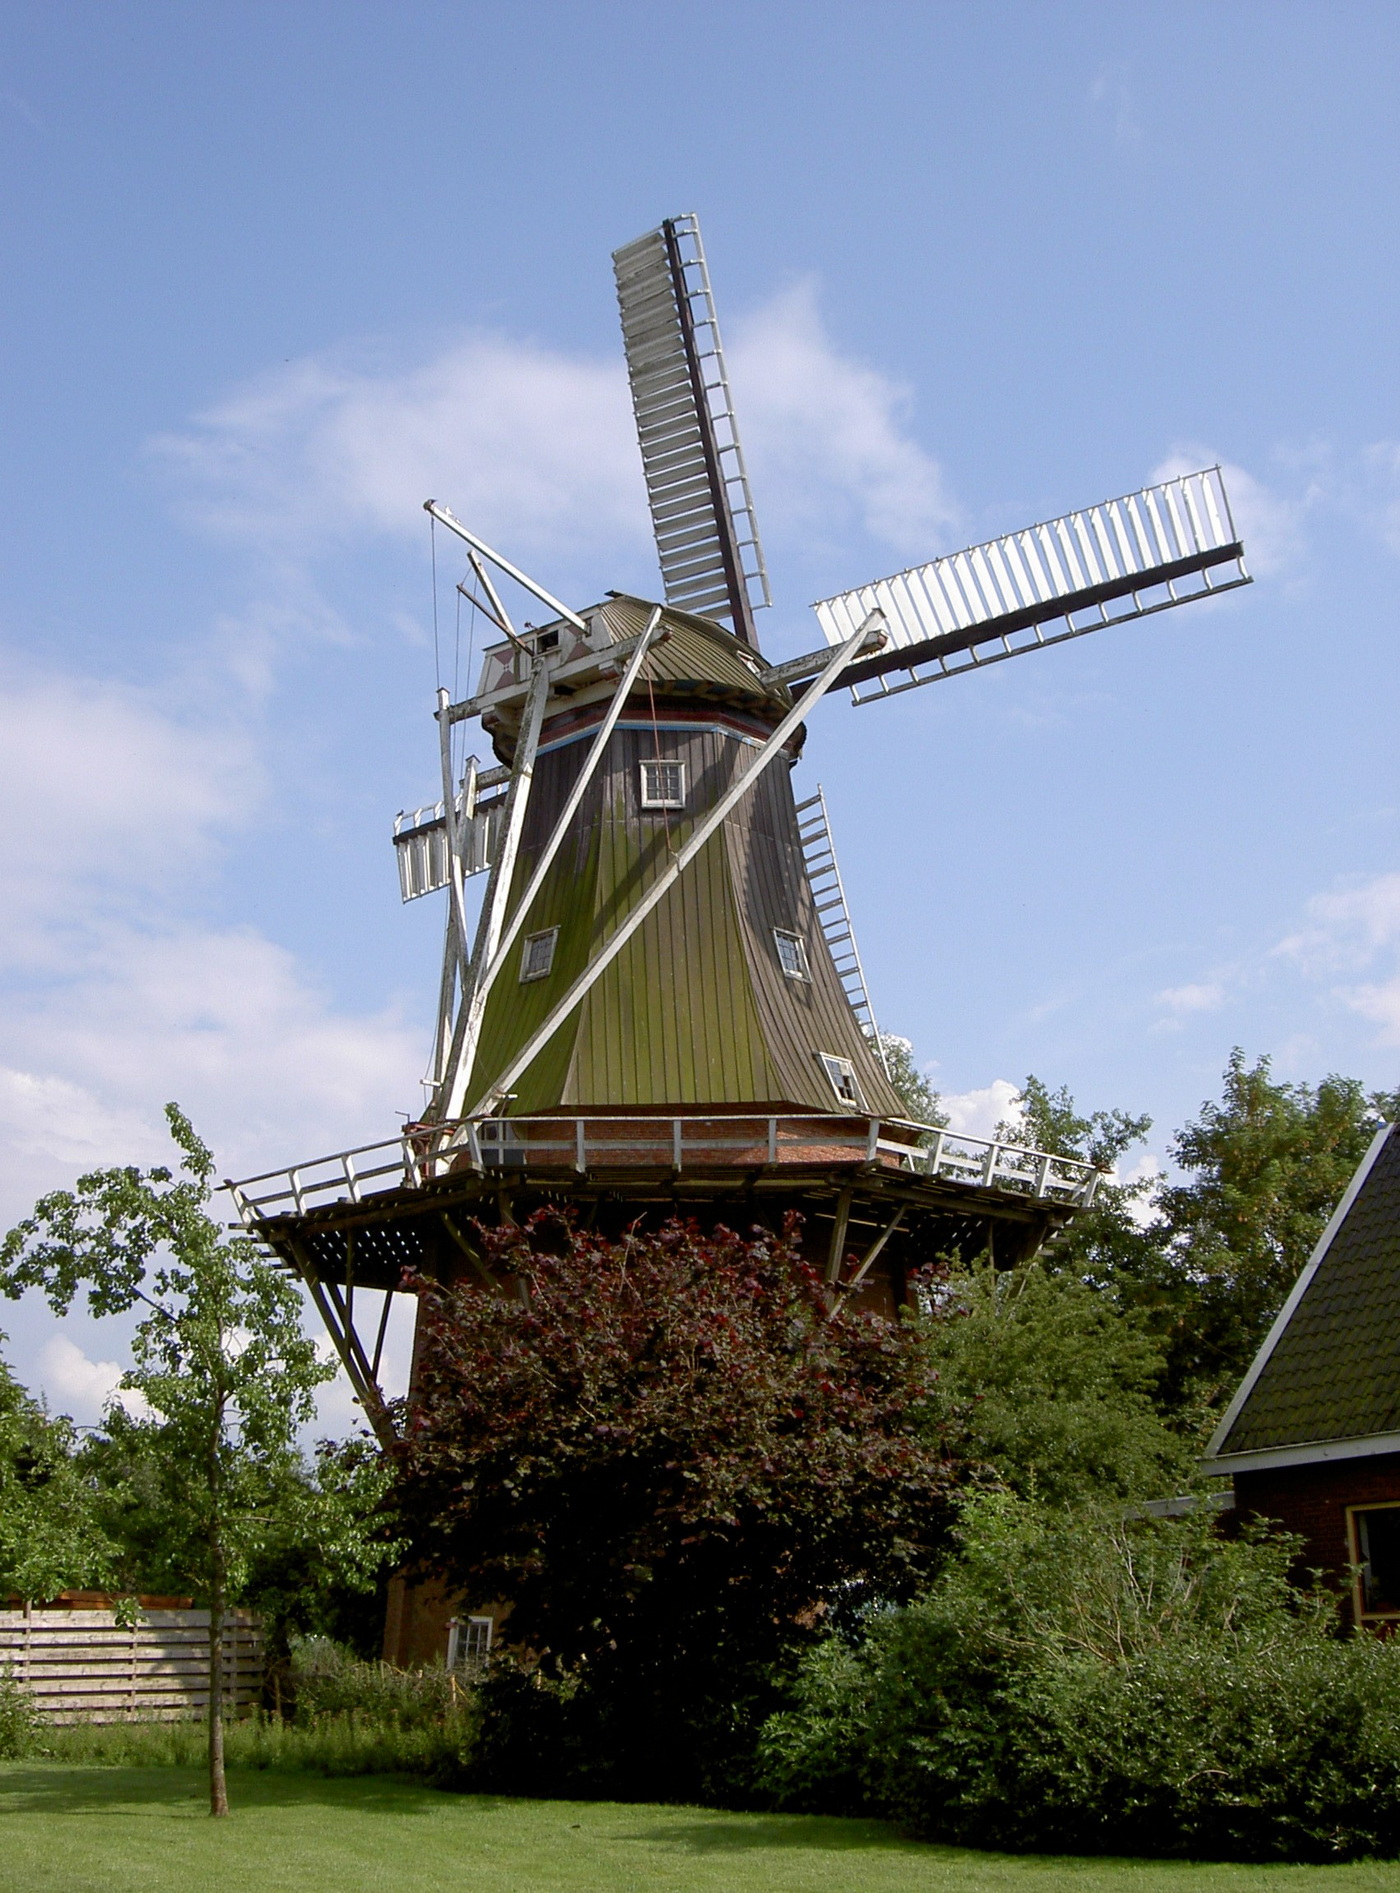 Het dorp heeft ook een molen uit 1851, Aeolus genaamd, die toe is aan restauratie. De molen staat bij de Molenweg 7 en is een rijksmonument (nr. 7061).